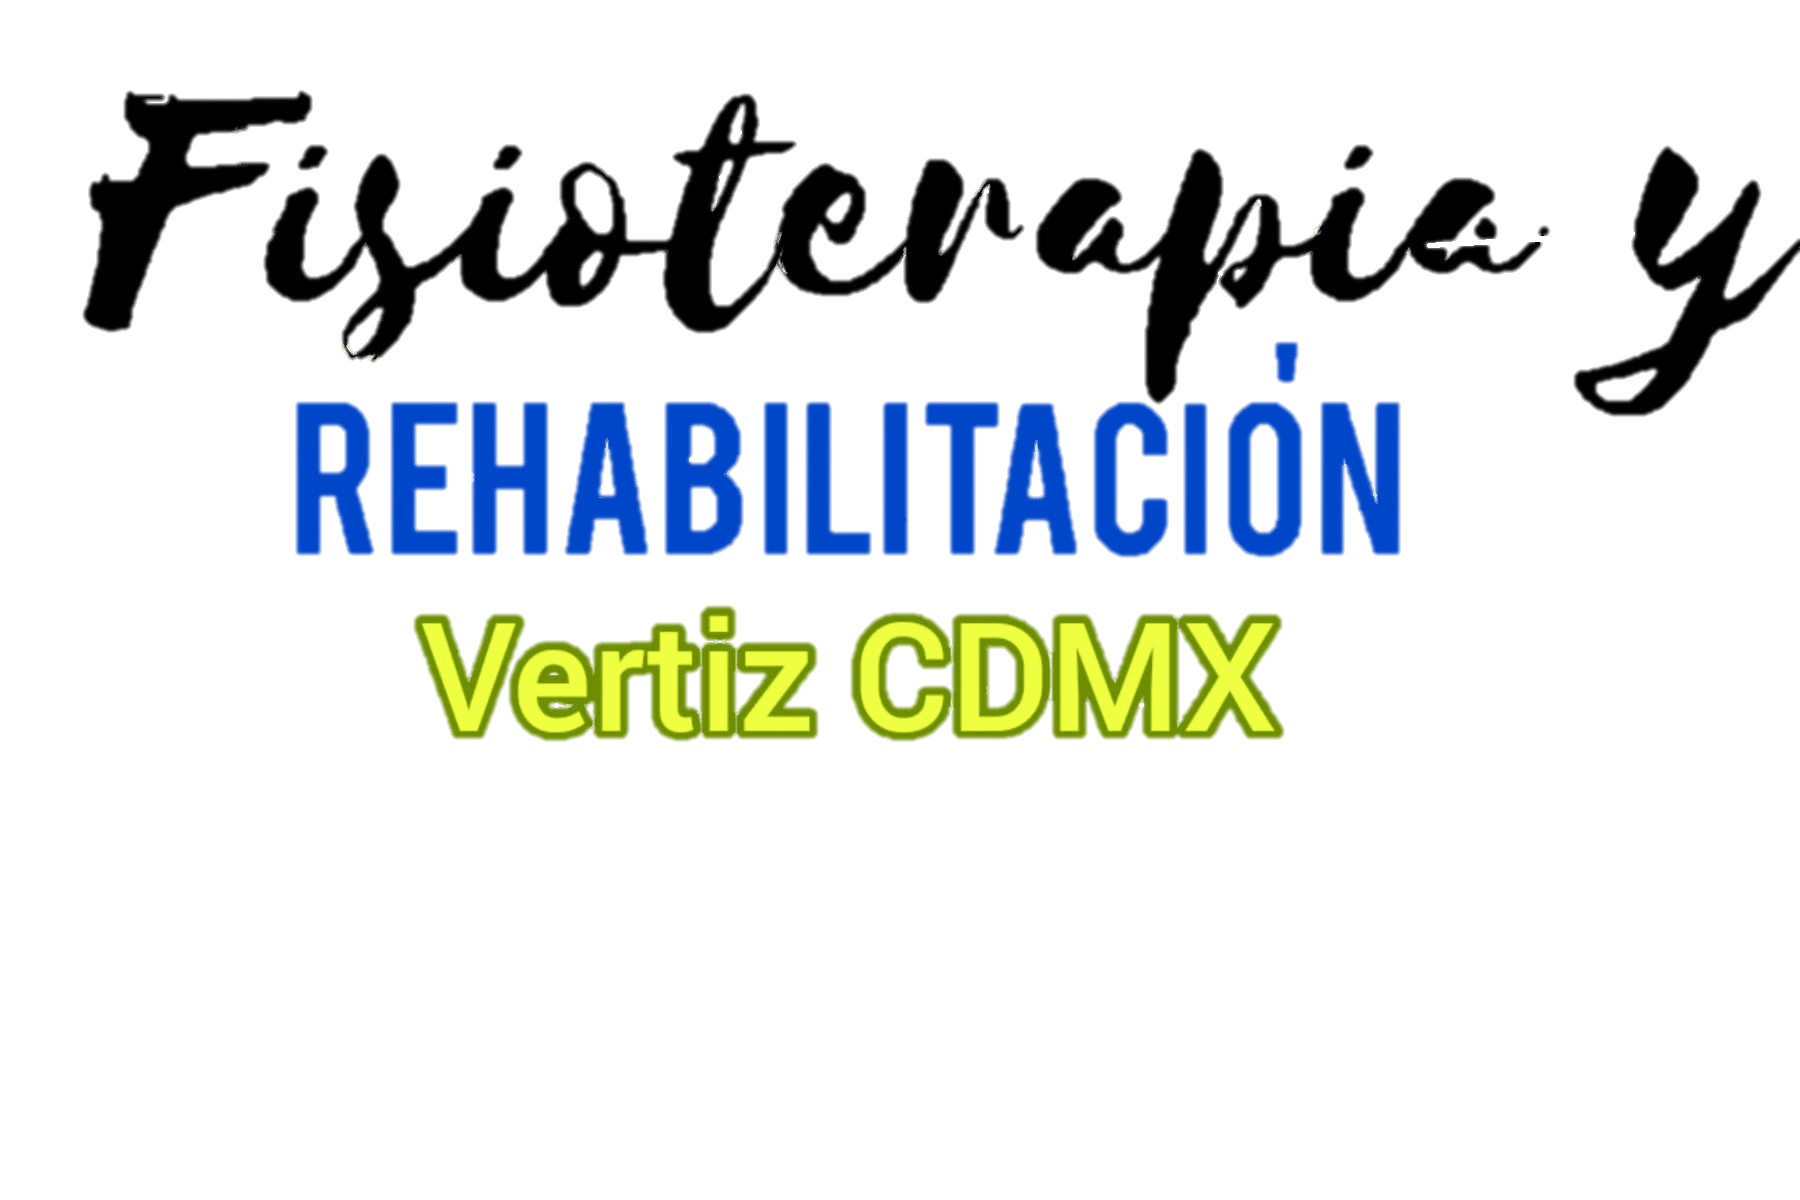 Fisioterapia y Rehabilitación Vertiz CDMX